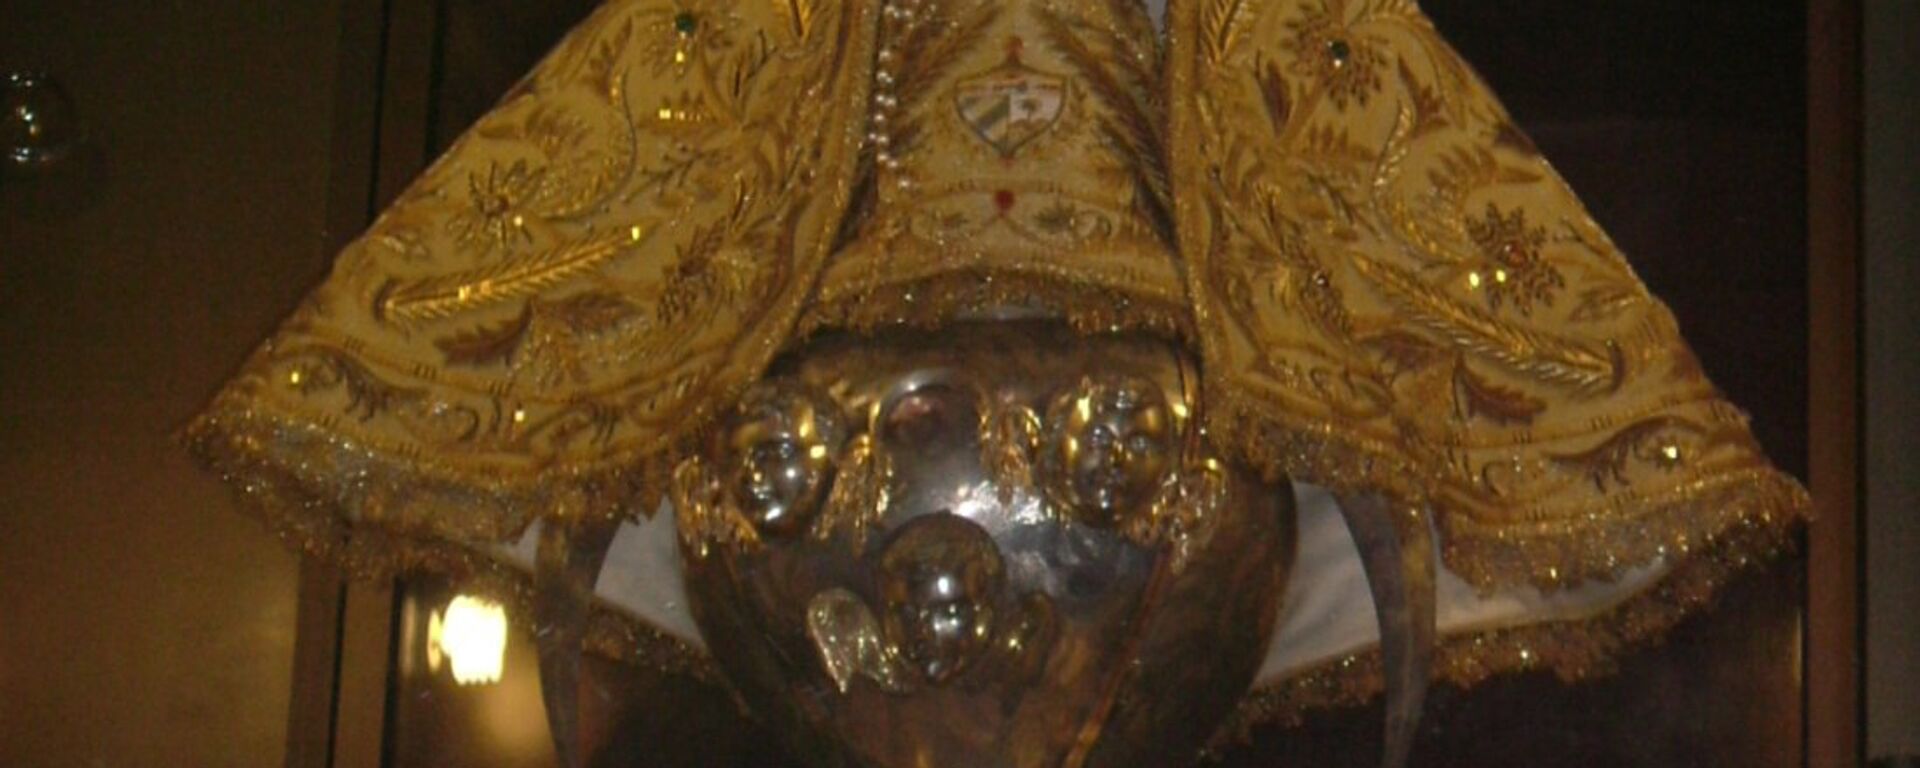 La Virgen de la Caridad del Cobre, en el Santuario de El Cobre. Patrona de Cuba. - Sputnik Mundo, 1920, 08.09.2020